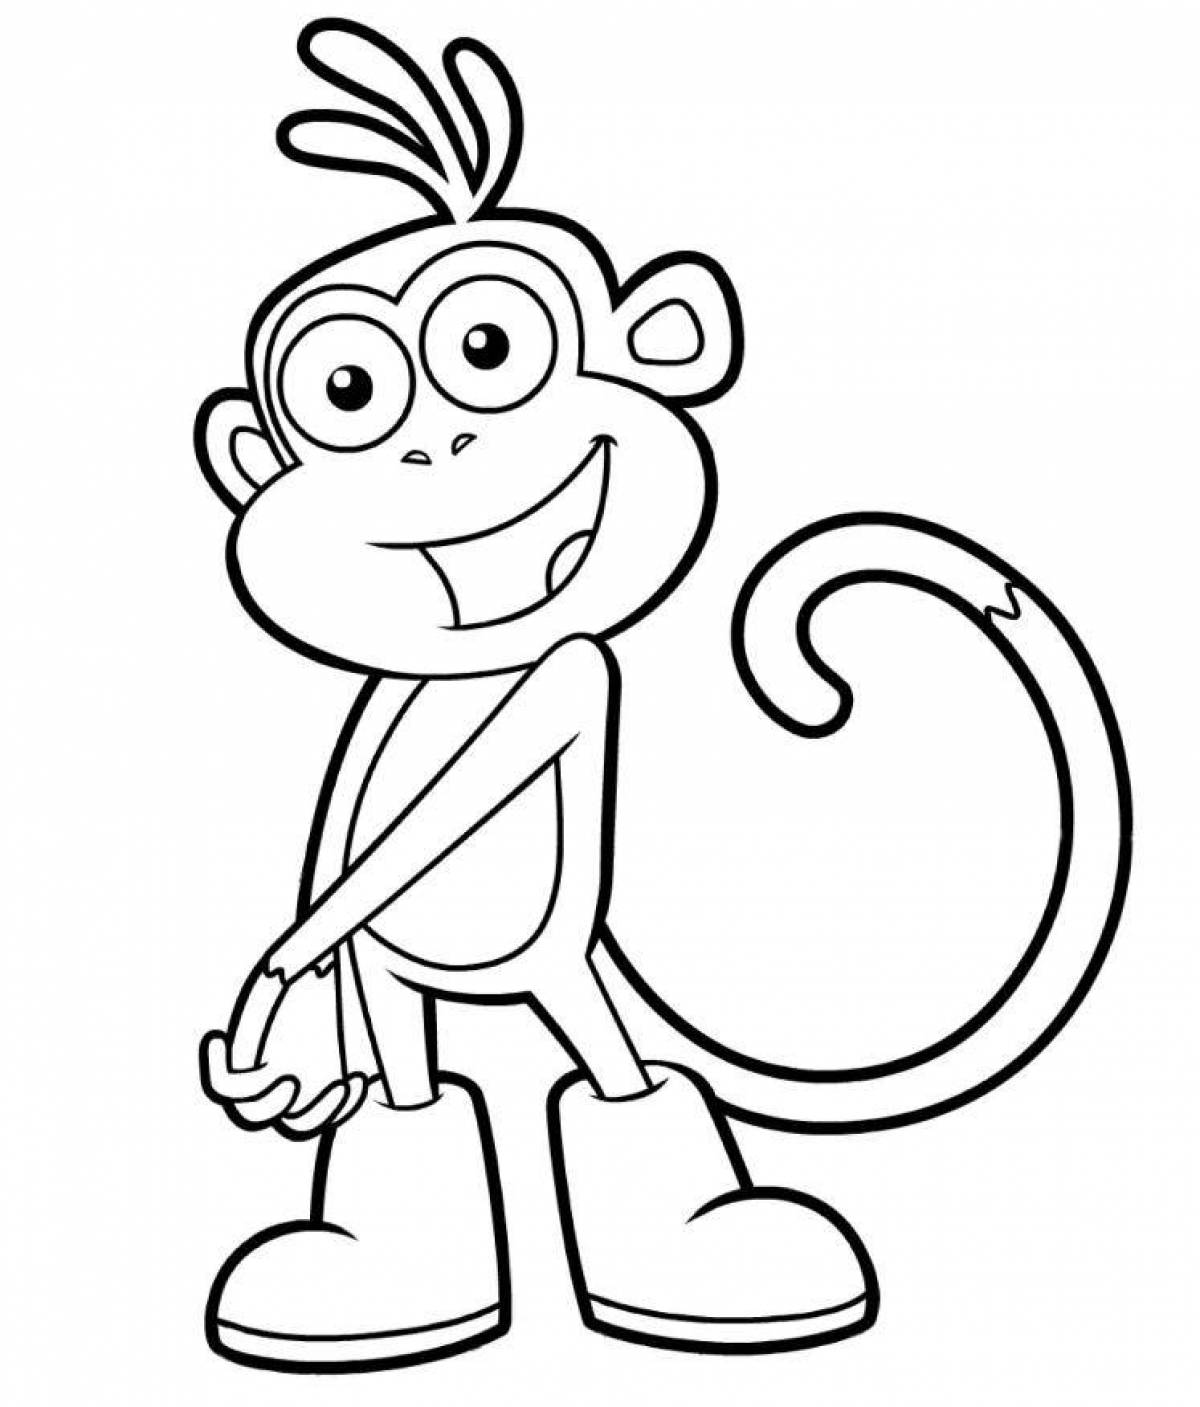 Анимированная раскраска обезьяна для детей